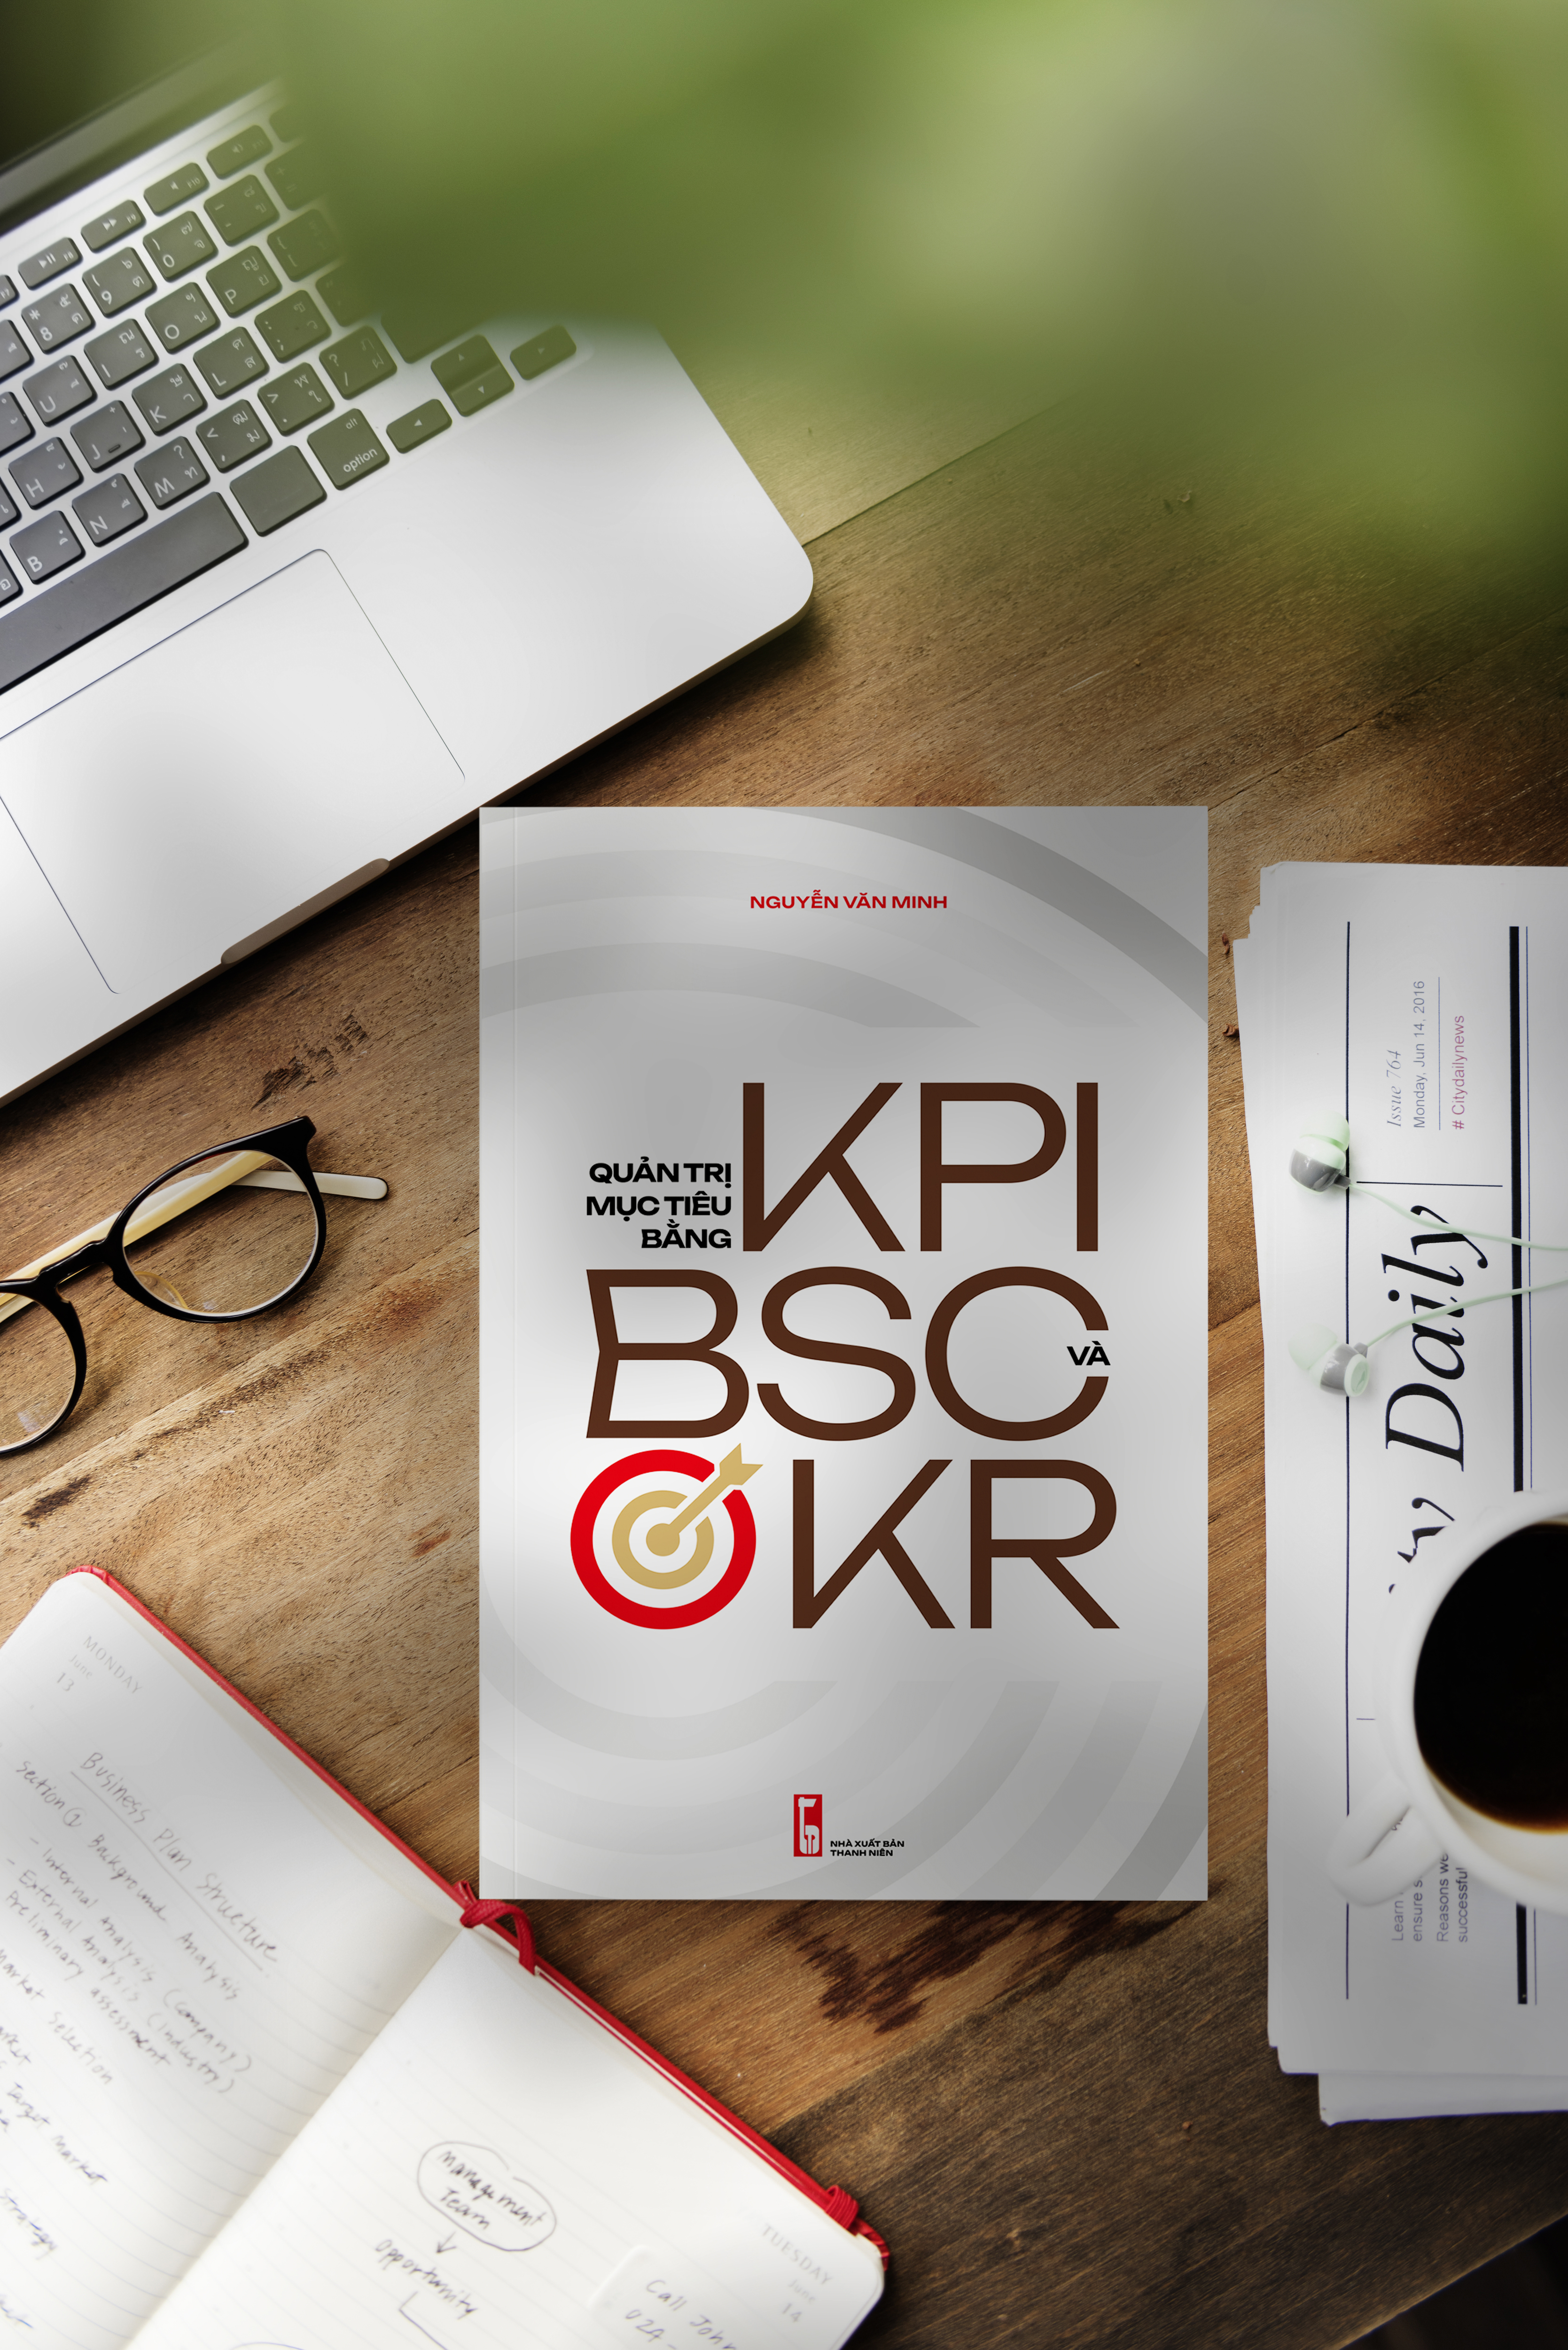 (Giảm 10%-15% giá bìa) Sách Quản trị, Sách Quản trị mục tiêu bằng KPI, BSC và OKR (Phương pháp, công cụ, biểu mẫu, tình huống)